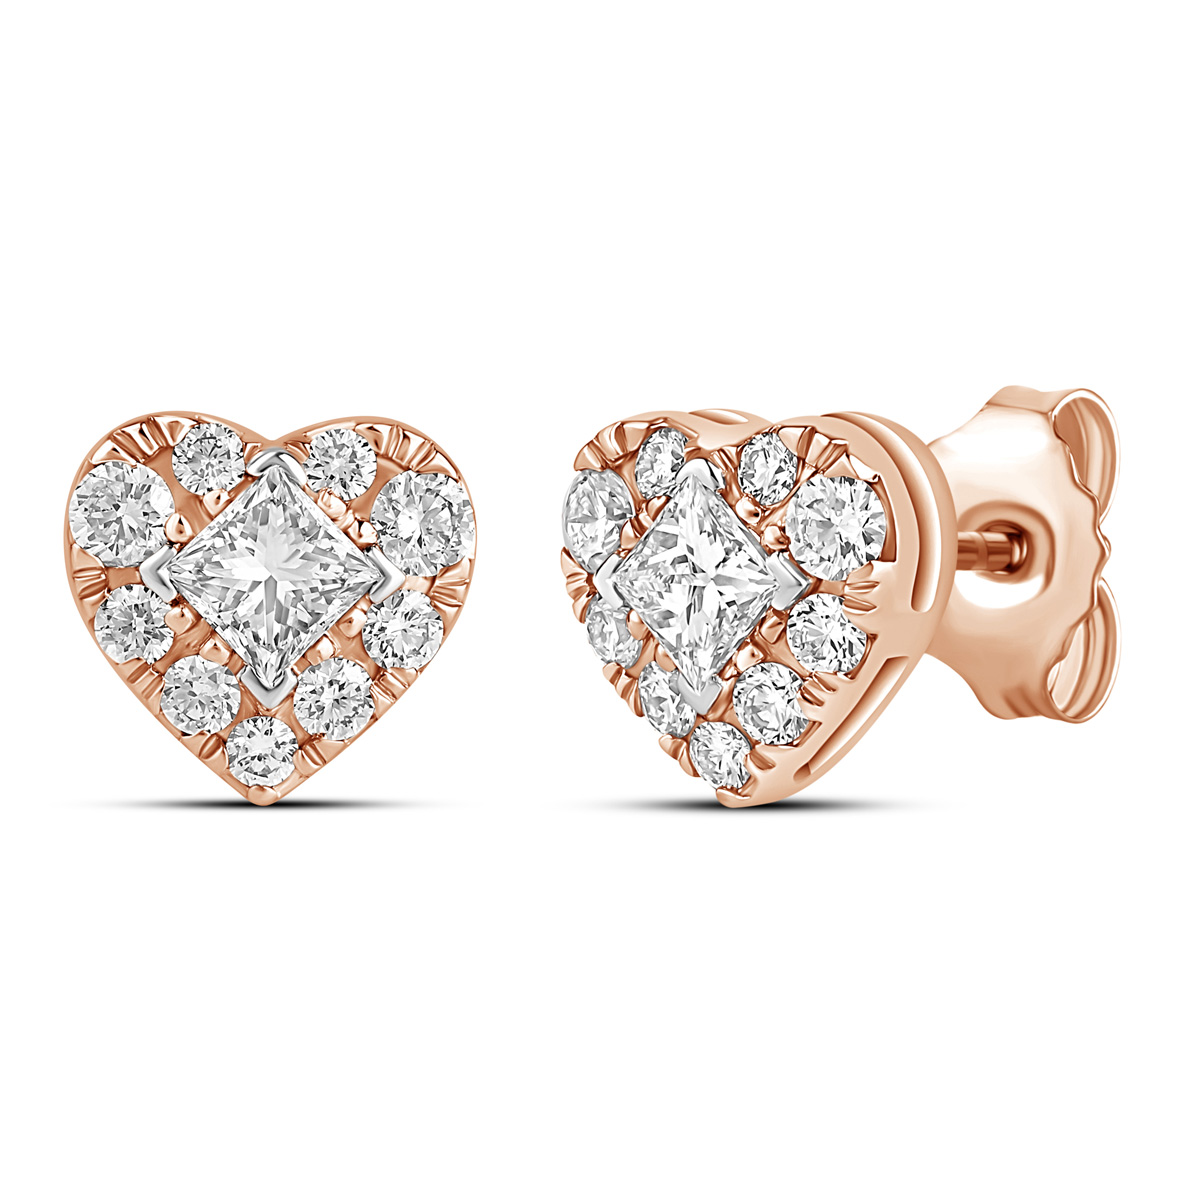 HE53116WWD4RN 
14K Rose Gold princess cut diamond earrings